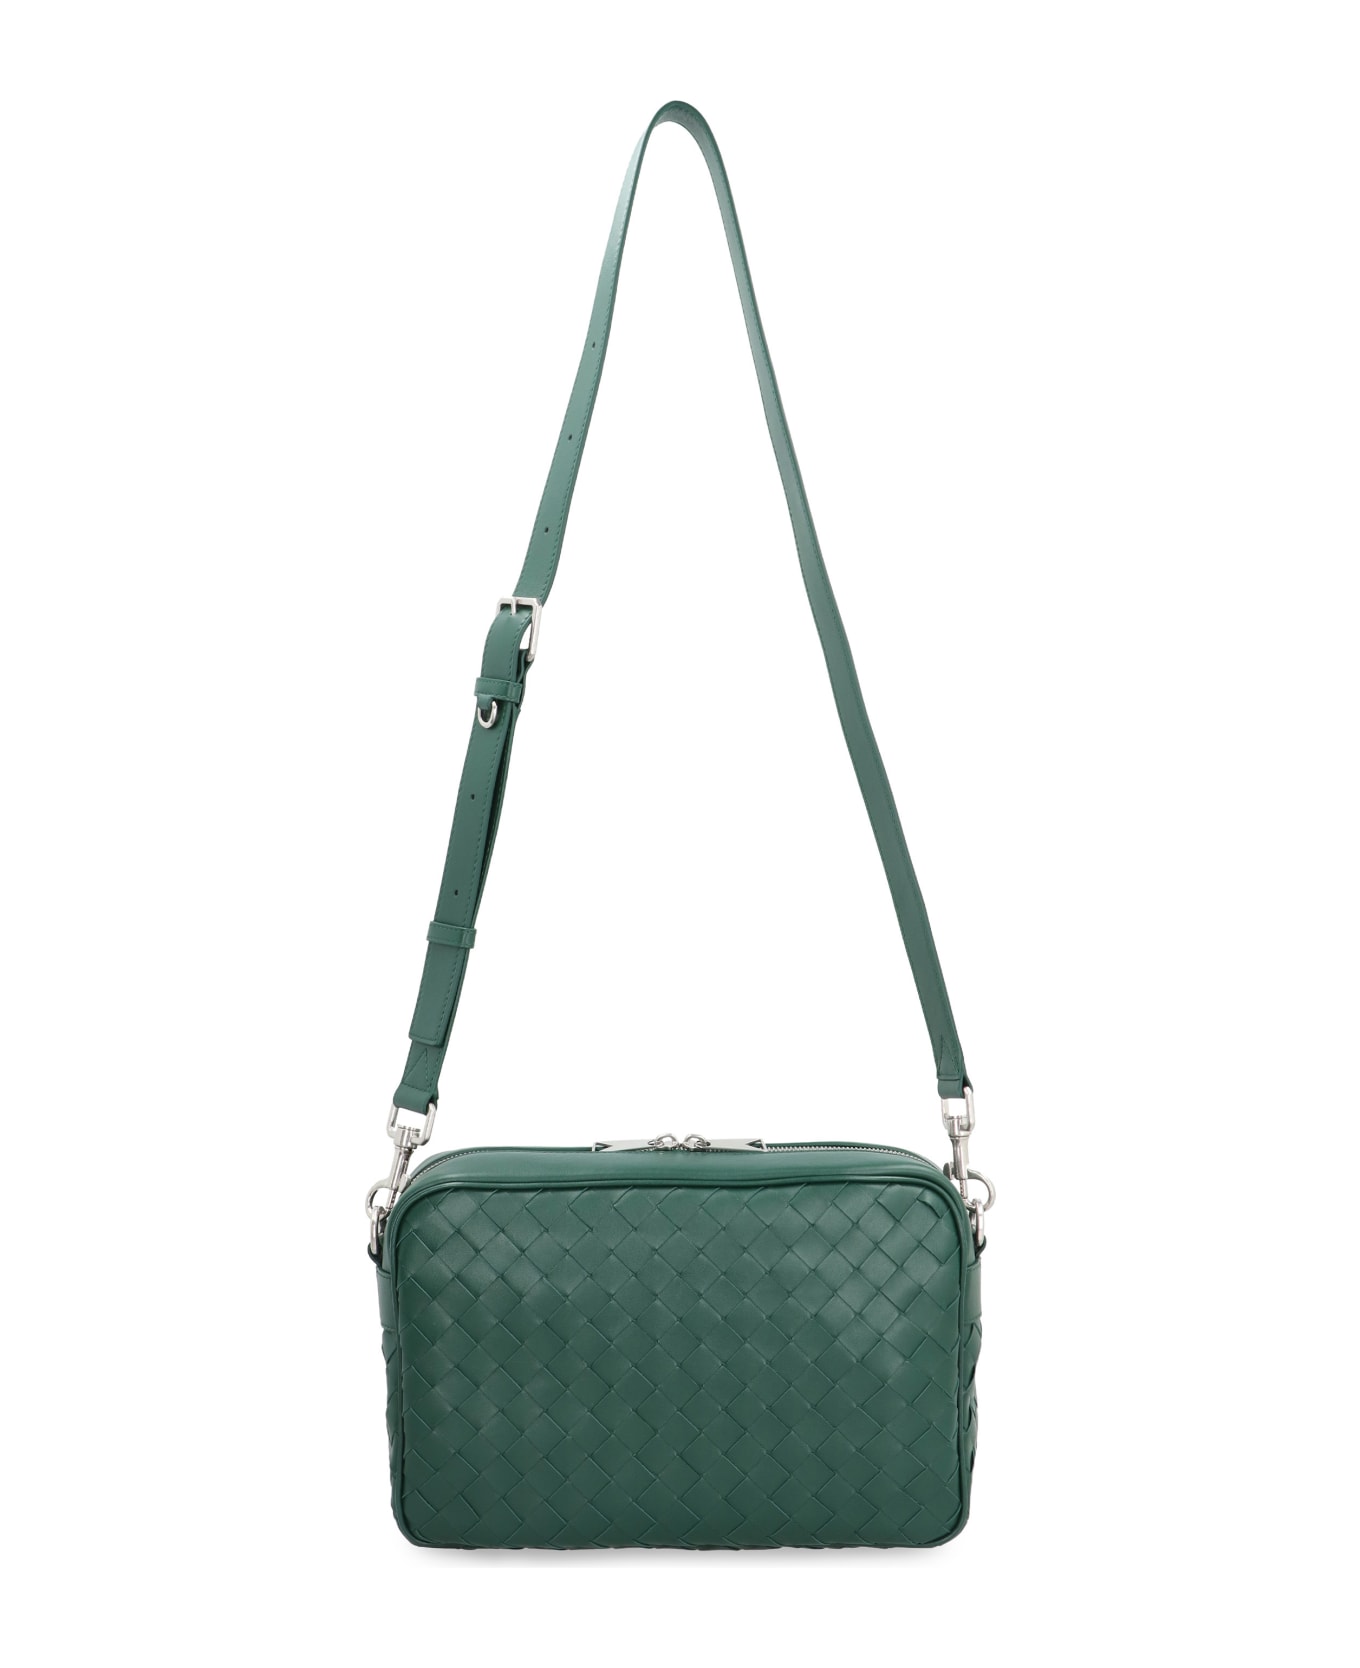 Bottega Veneta Leather Camera Bag - green ショルダーバッグ